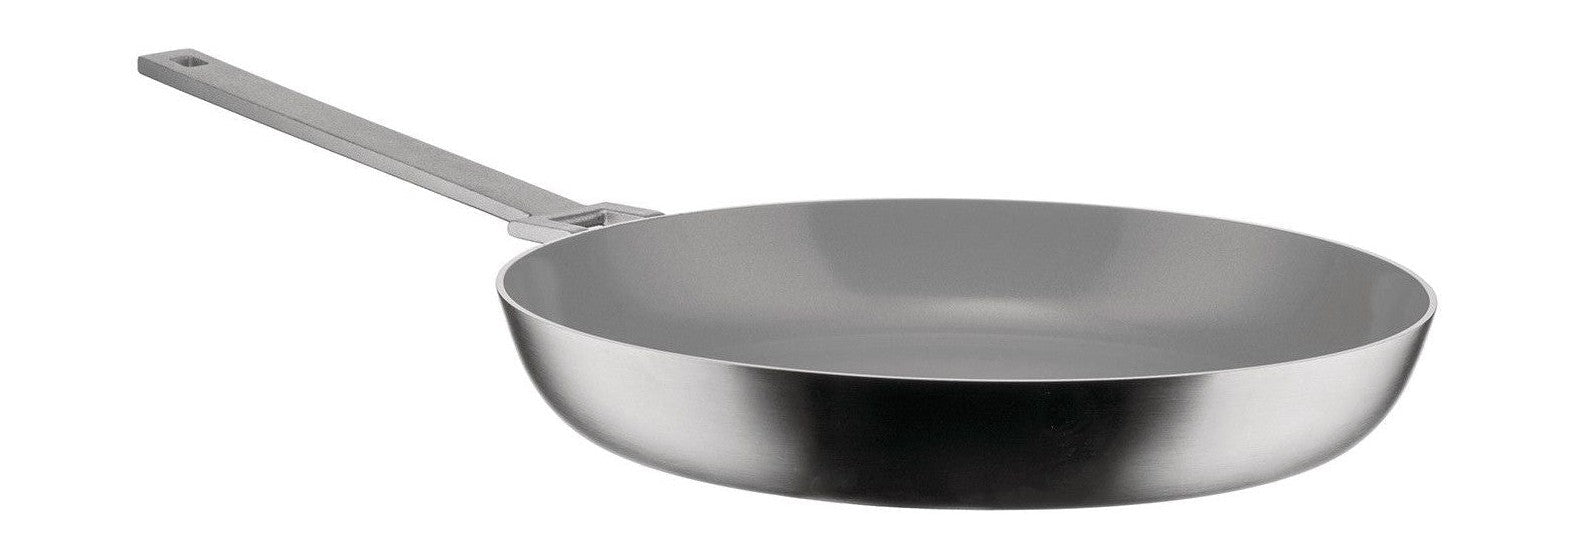 Alelessi convivio Frying Pan avec une longue poignée, Ø 28 cm